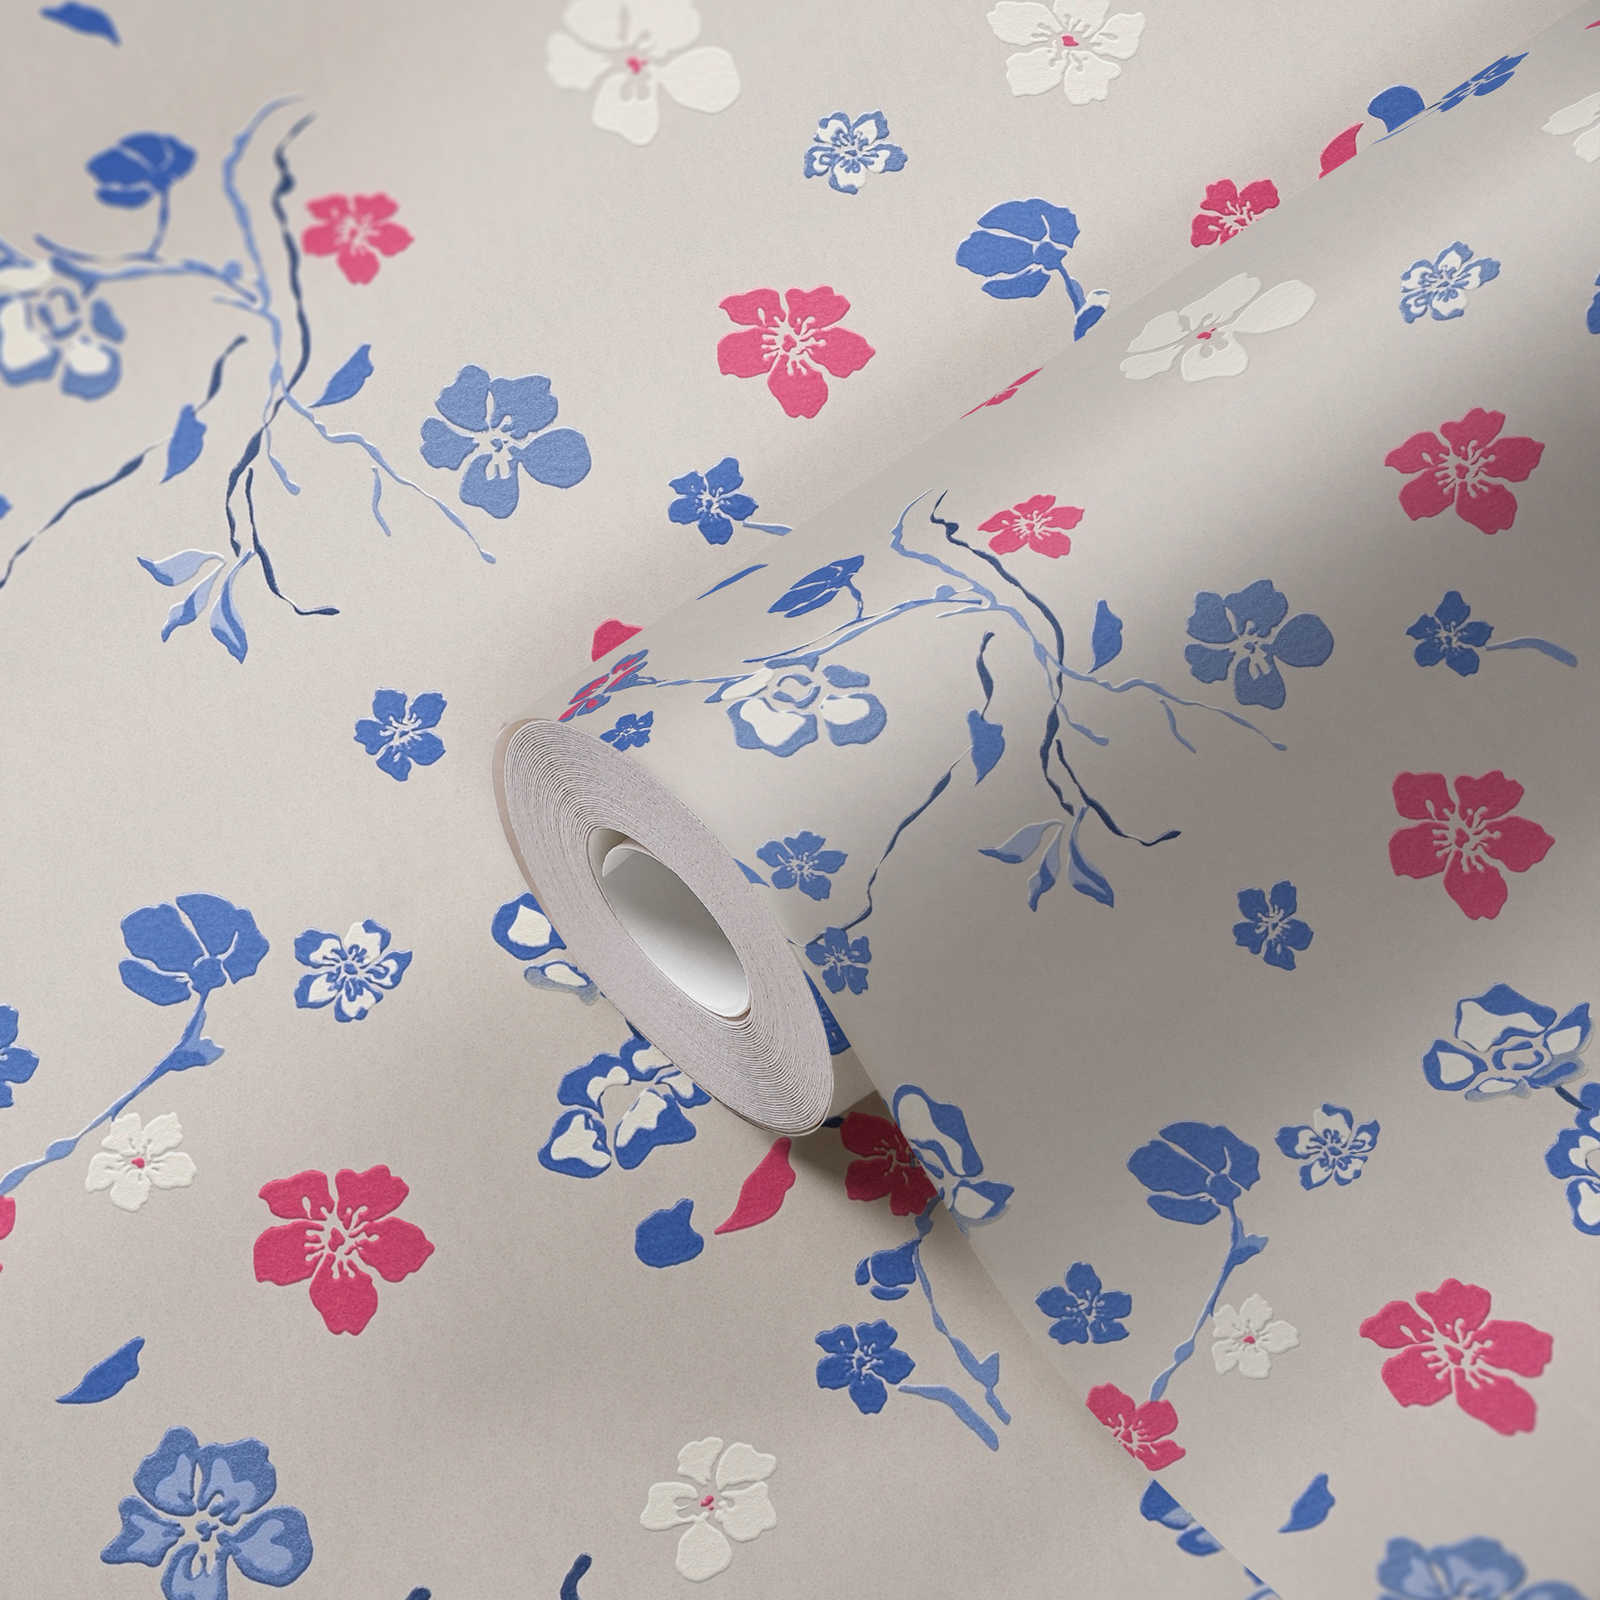             Papier peint intissé avec motif floral fantaisie - gris clair, bleu, rose
        